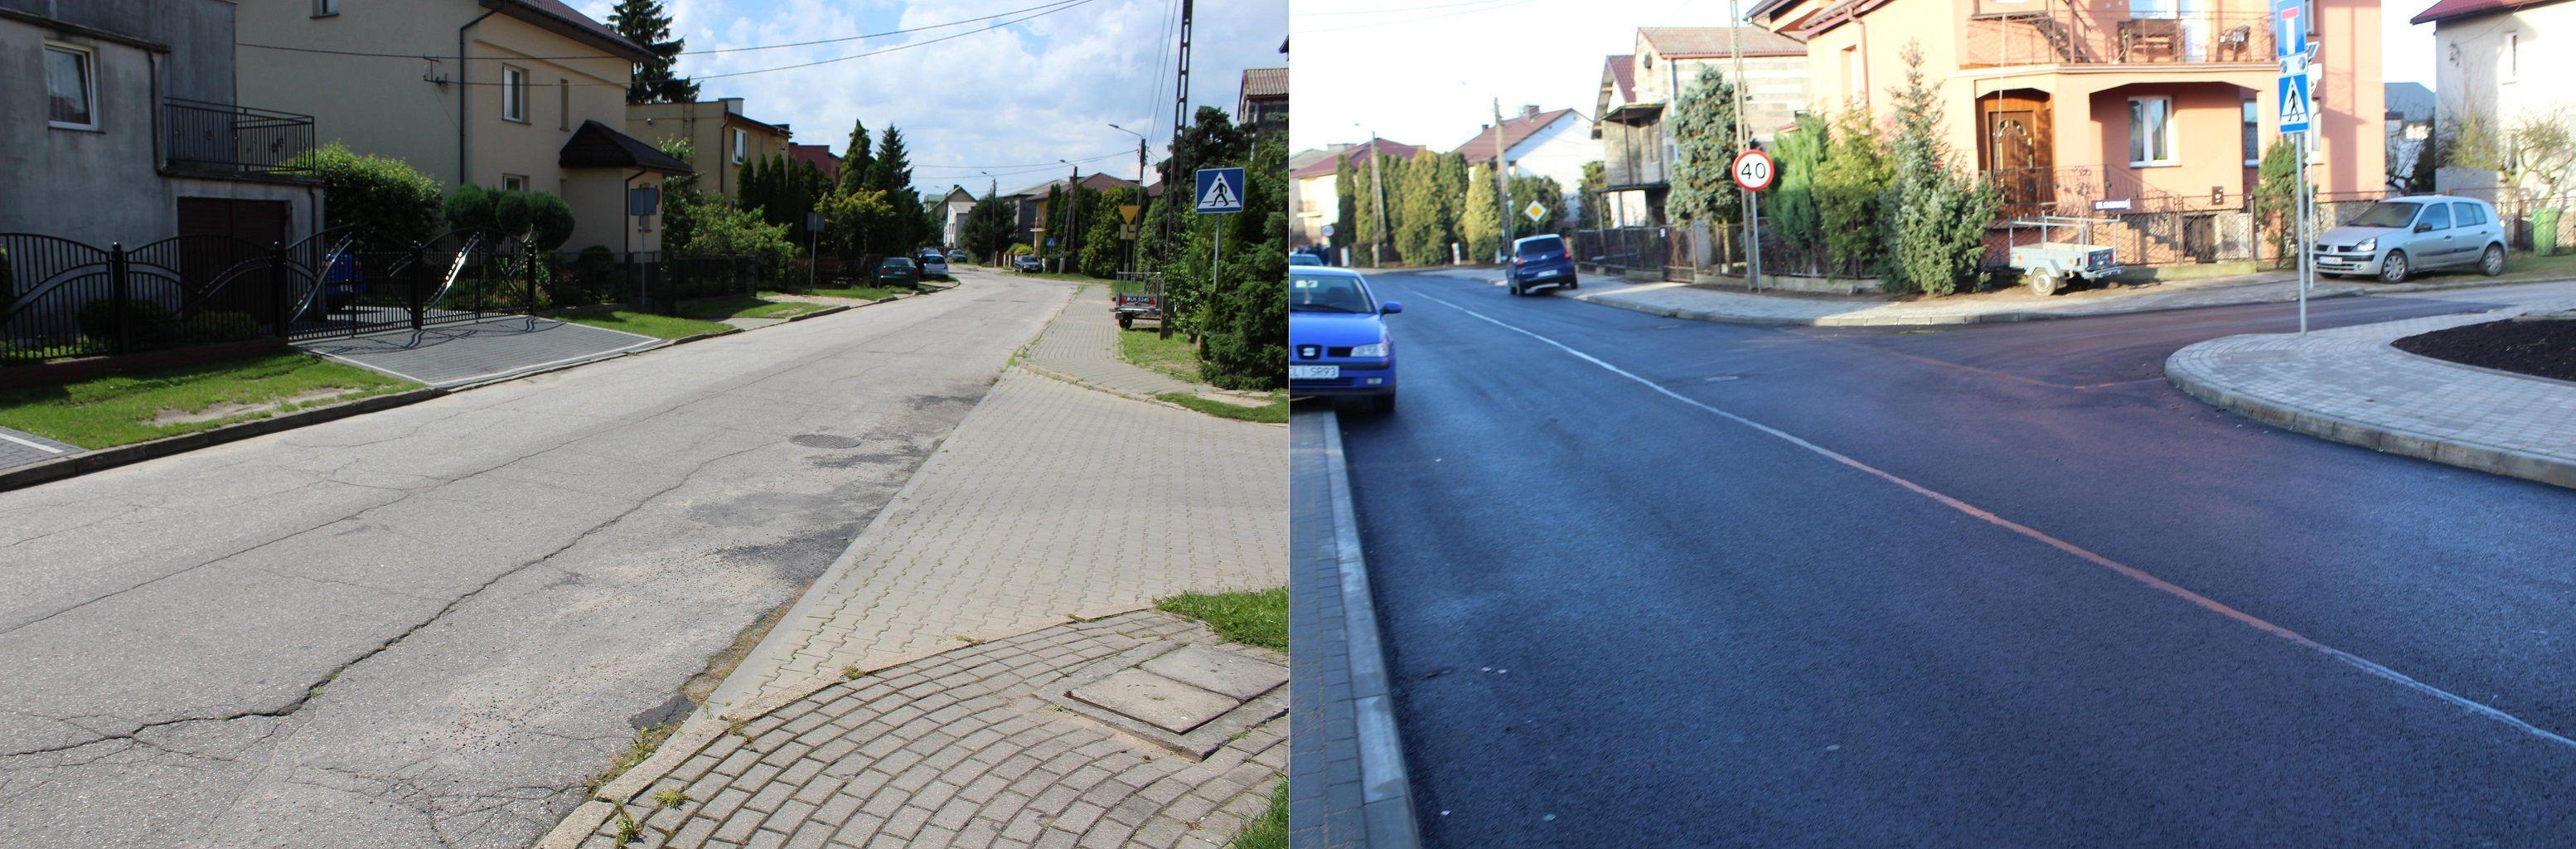 Przebudowa ulicy Jabłoniowej - stan przed i po - kliknięcie spowoduje powiększenie obrazka